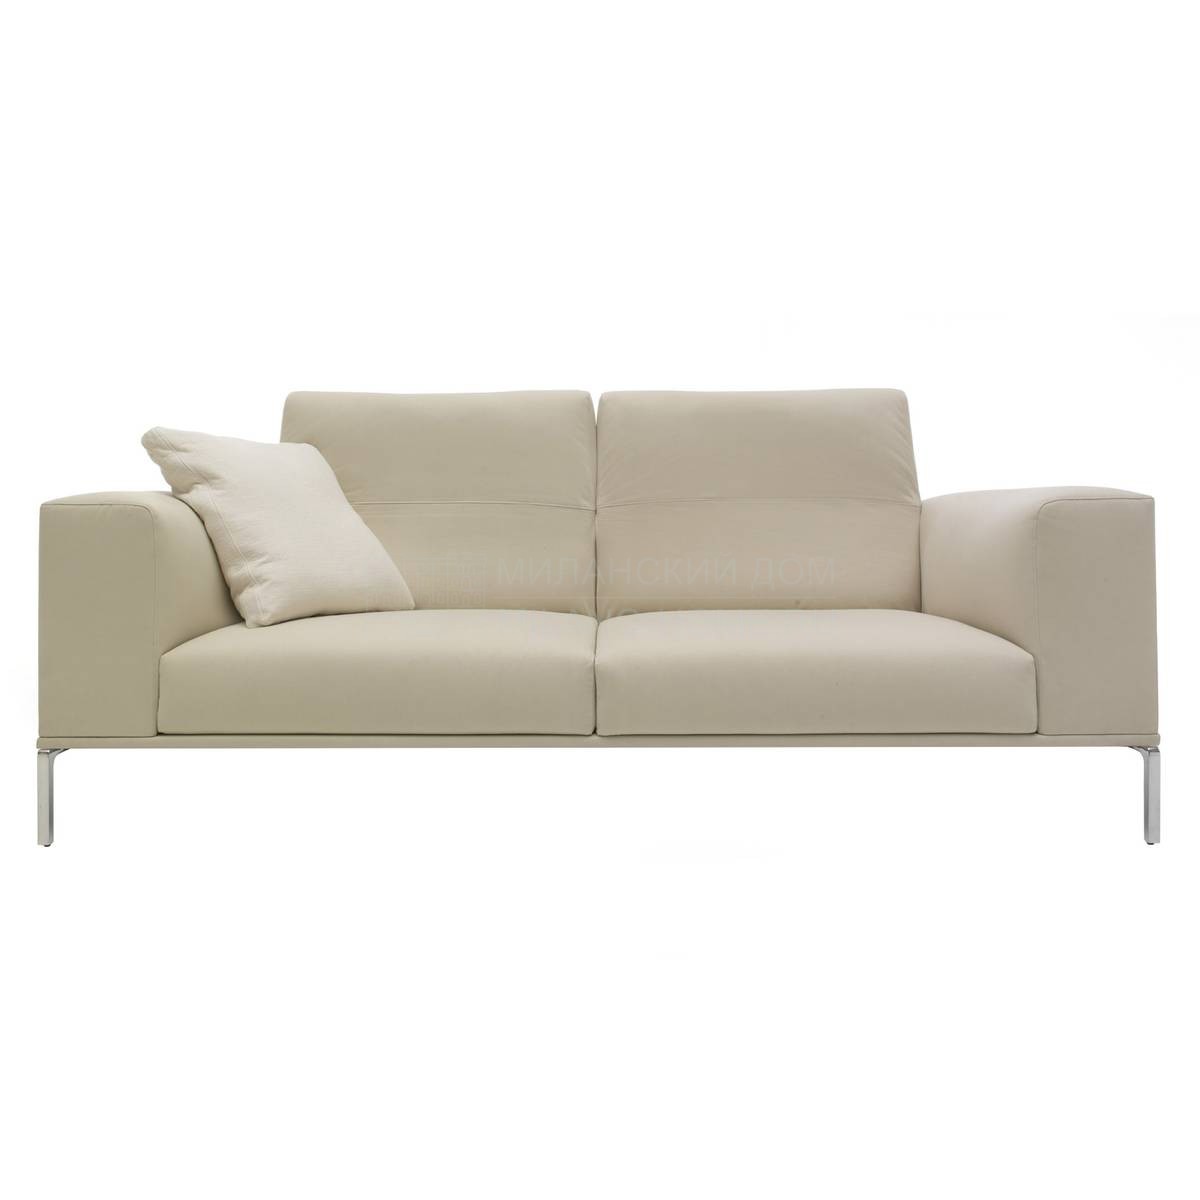 Прямой диван 191 Moov/sofa из Италии фабрики CASSINA